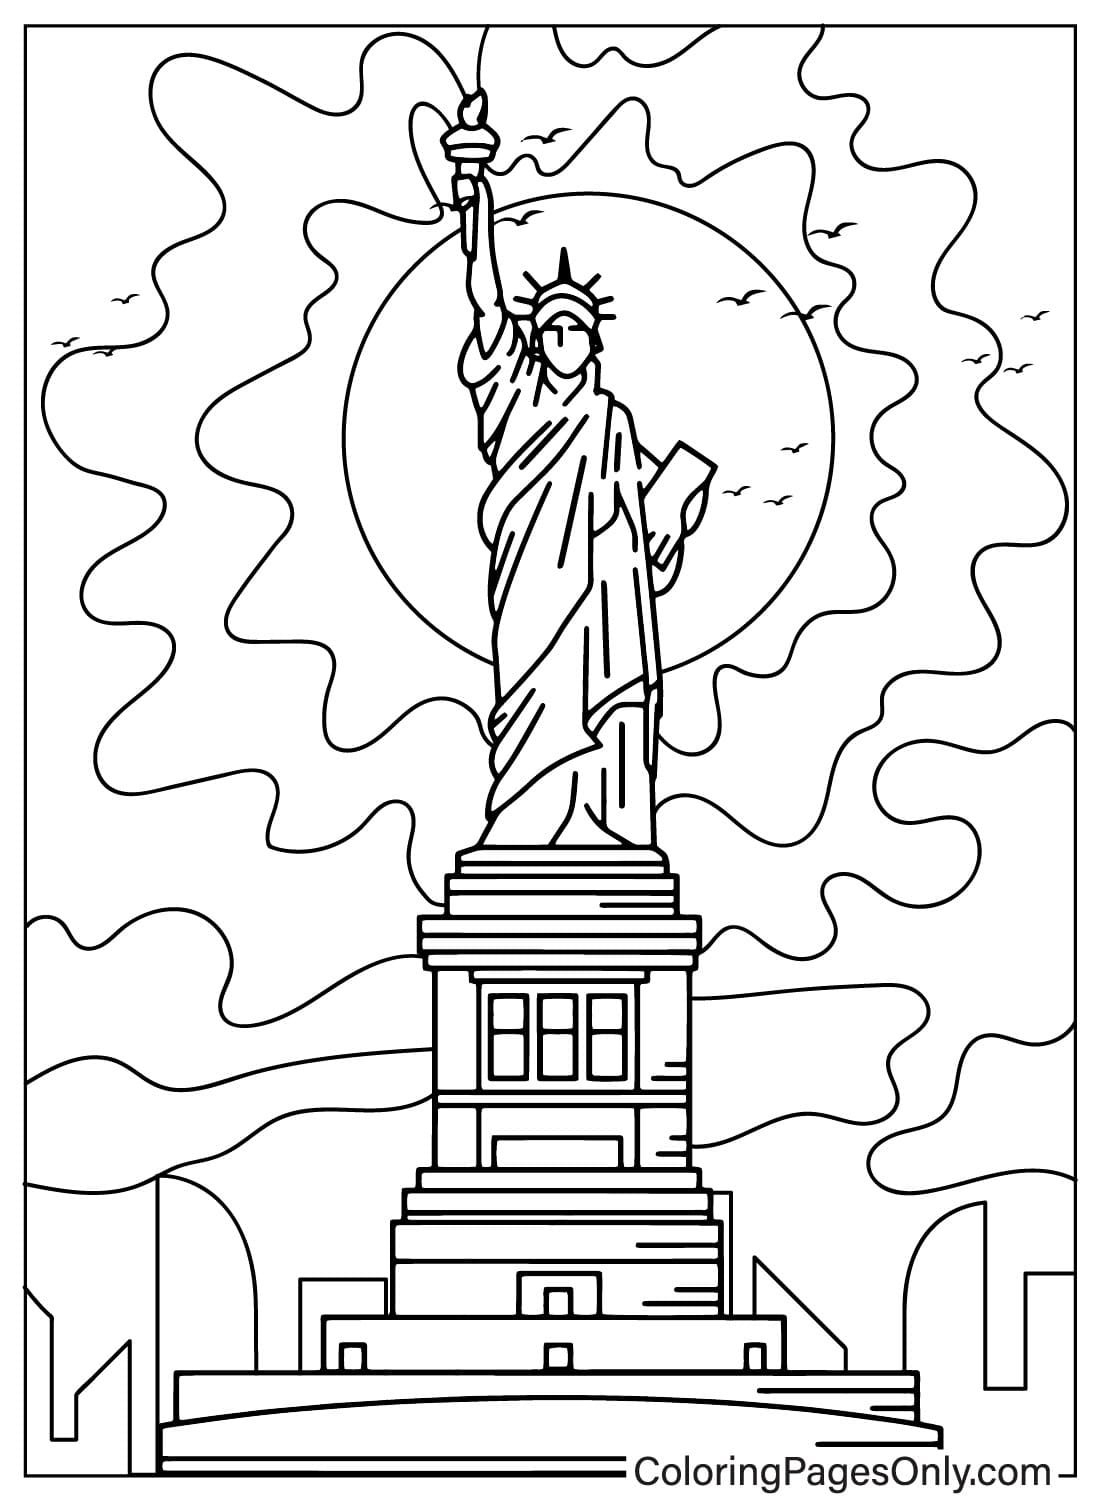 Dibujos para colorear de la Estatua de la Libertad para niños